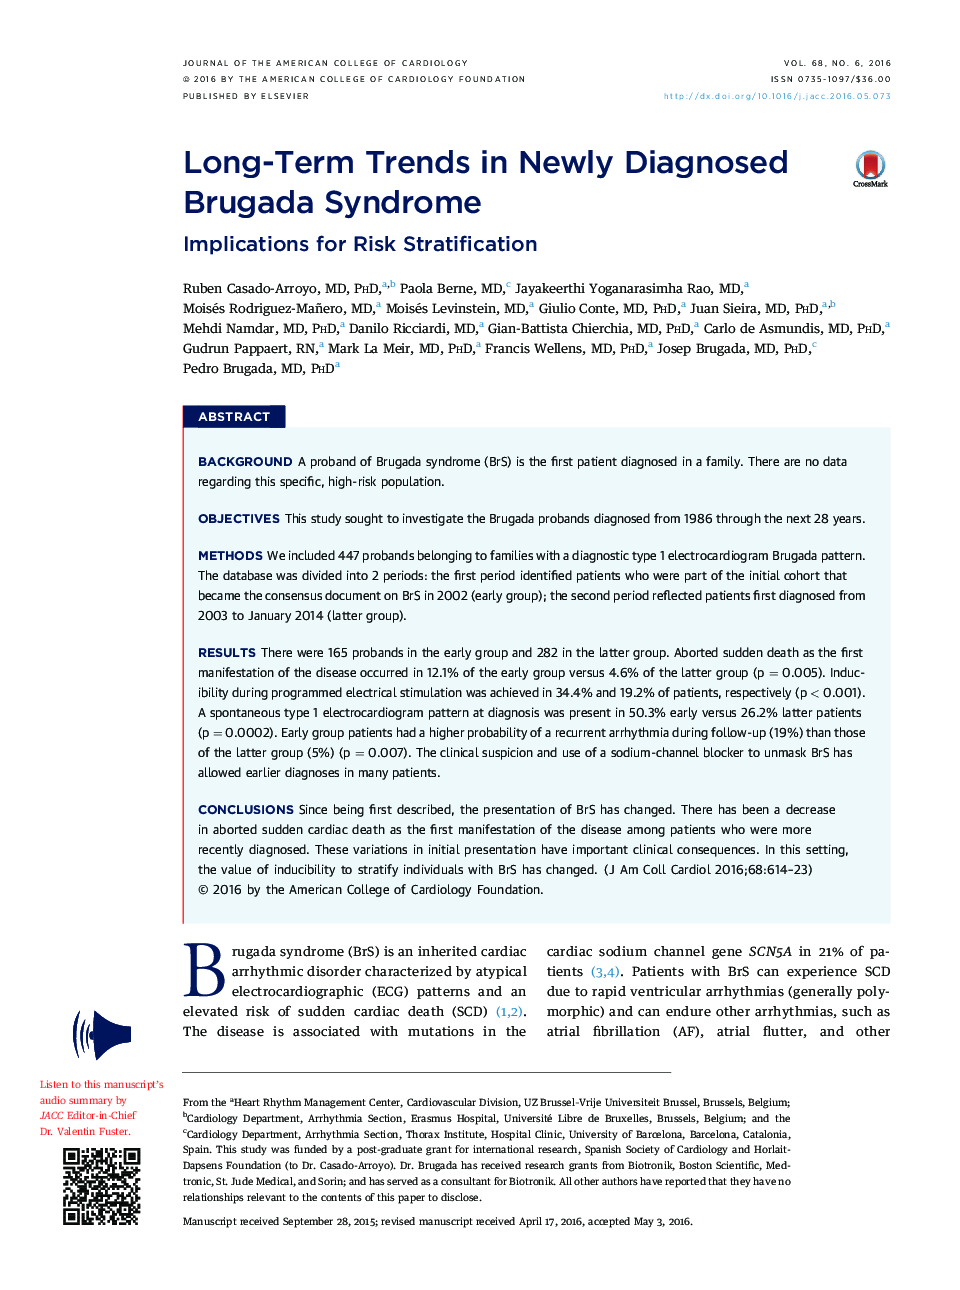 روند بلندمدت در سندرم بروگادا که اخیرا تشخیص داده شده است: پیامدهای تشدید خطر است 